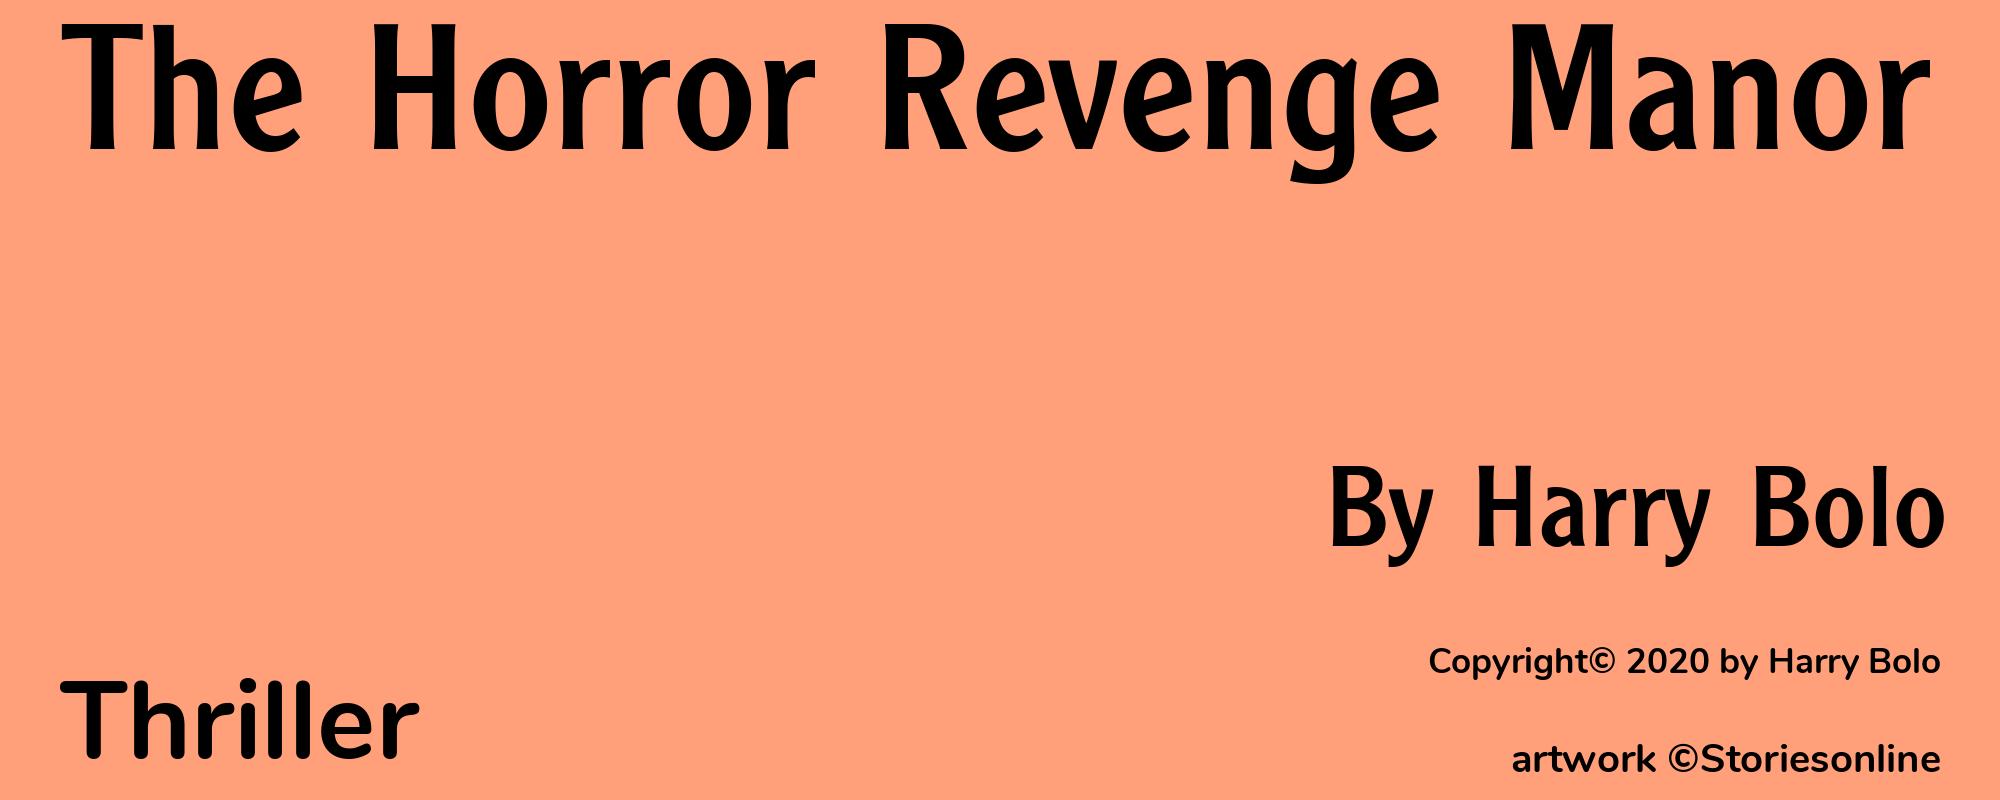 The Horror Revenge Manor - Cover